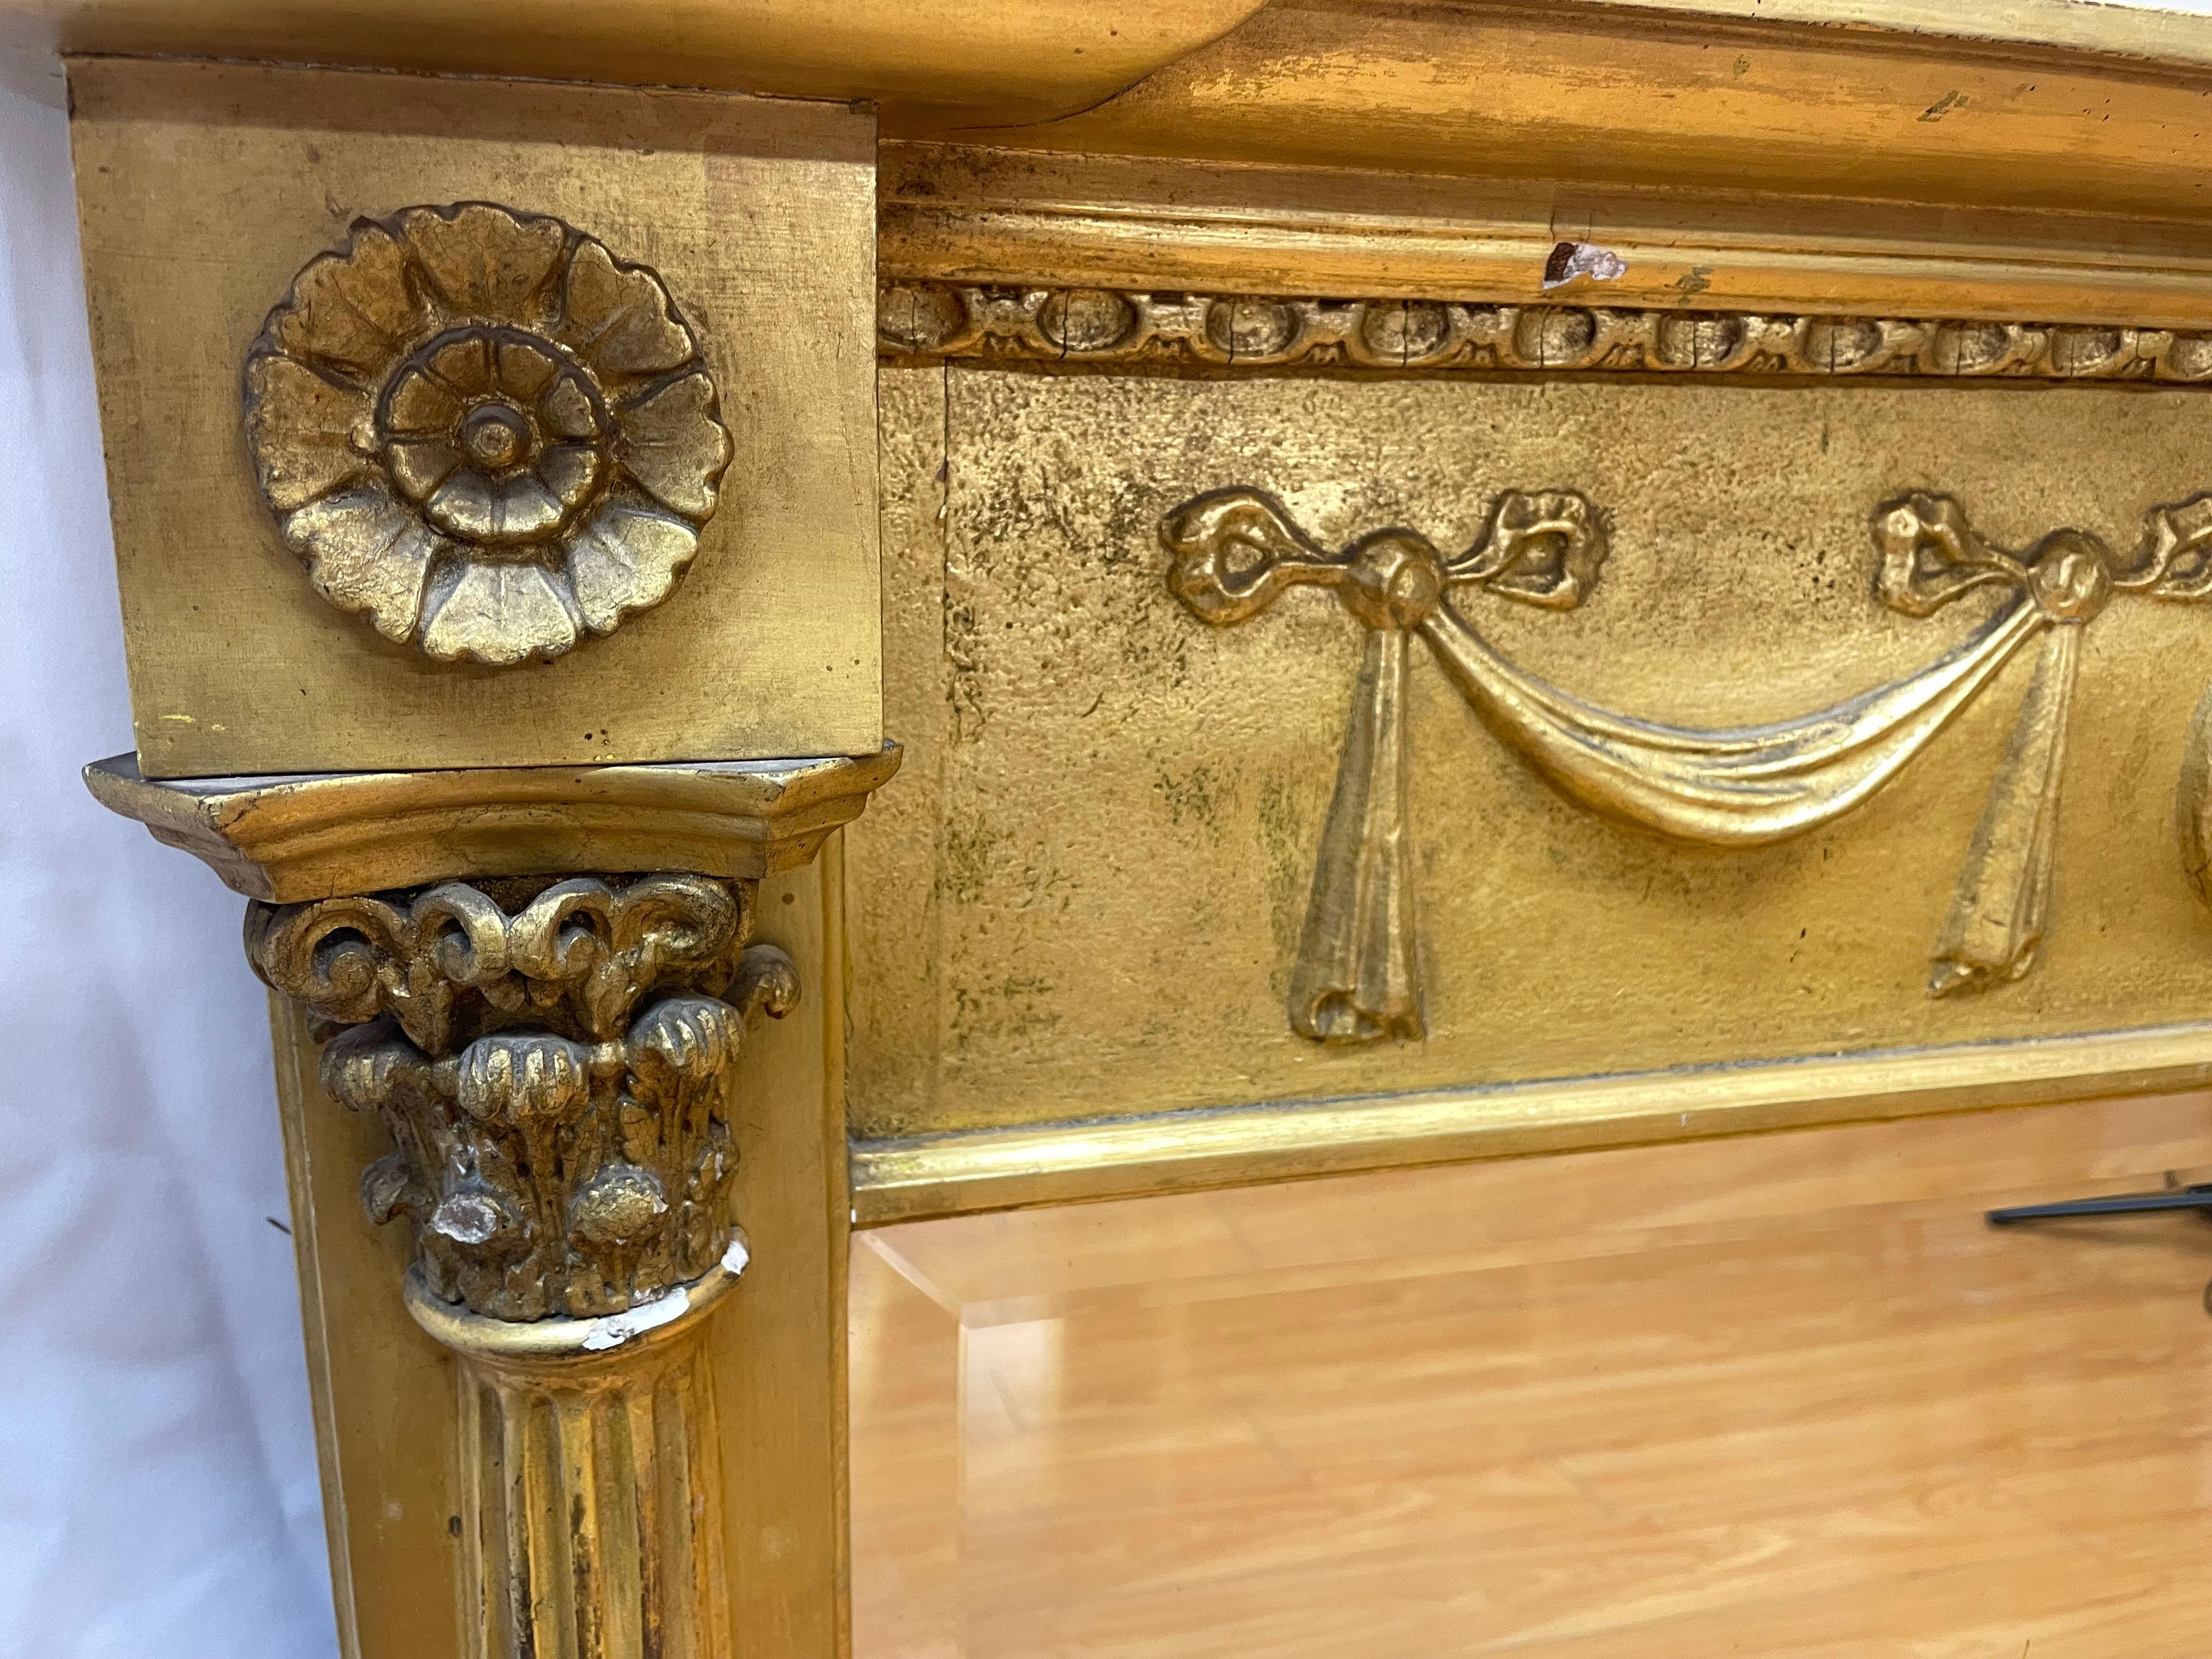 Miroir de cheminée de style Régence, doré avec motif de ruban

Du début au milieu du 20e siècle

51x55x33